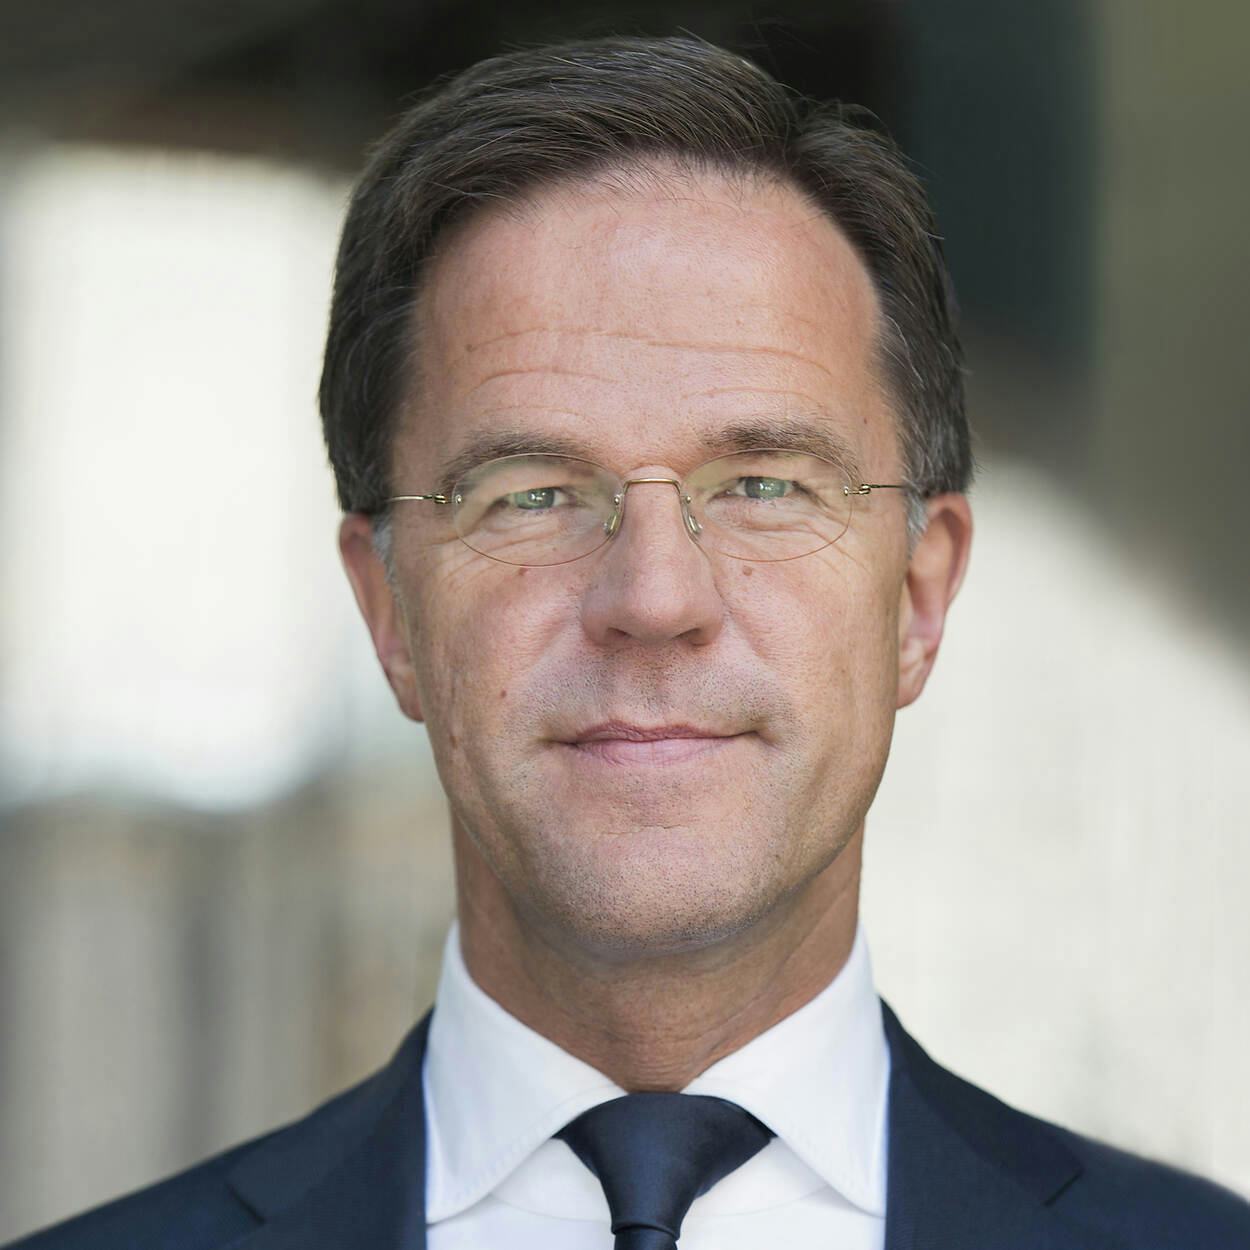 Nederland, Den Haag, 15-05-2019. Mark Rutte, Minister-president, minister van Algemene Zaken.